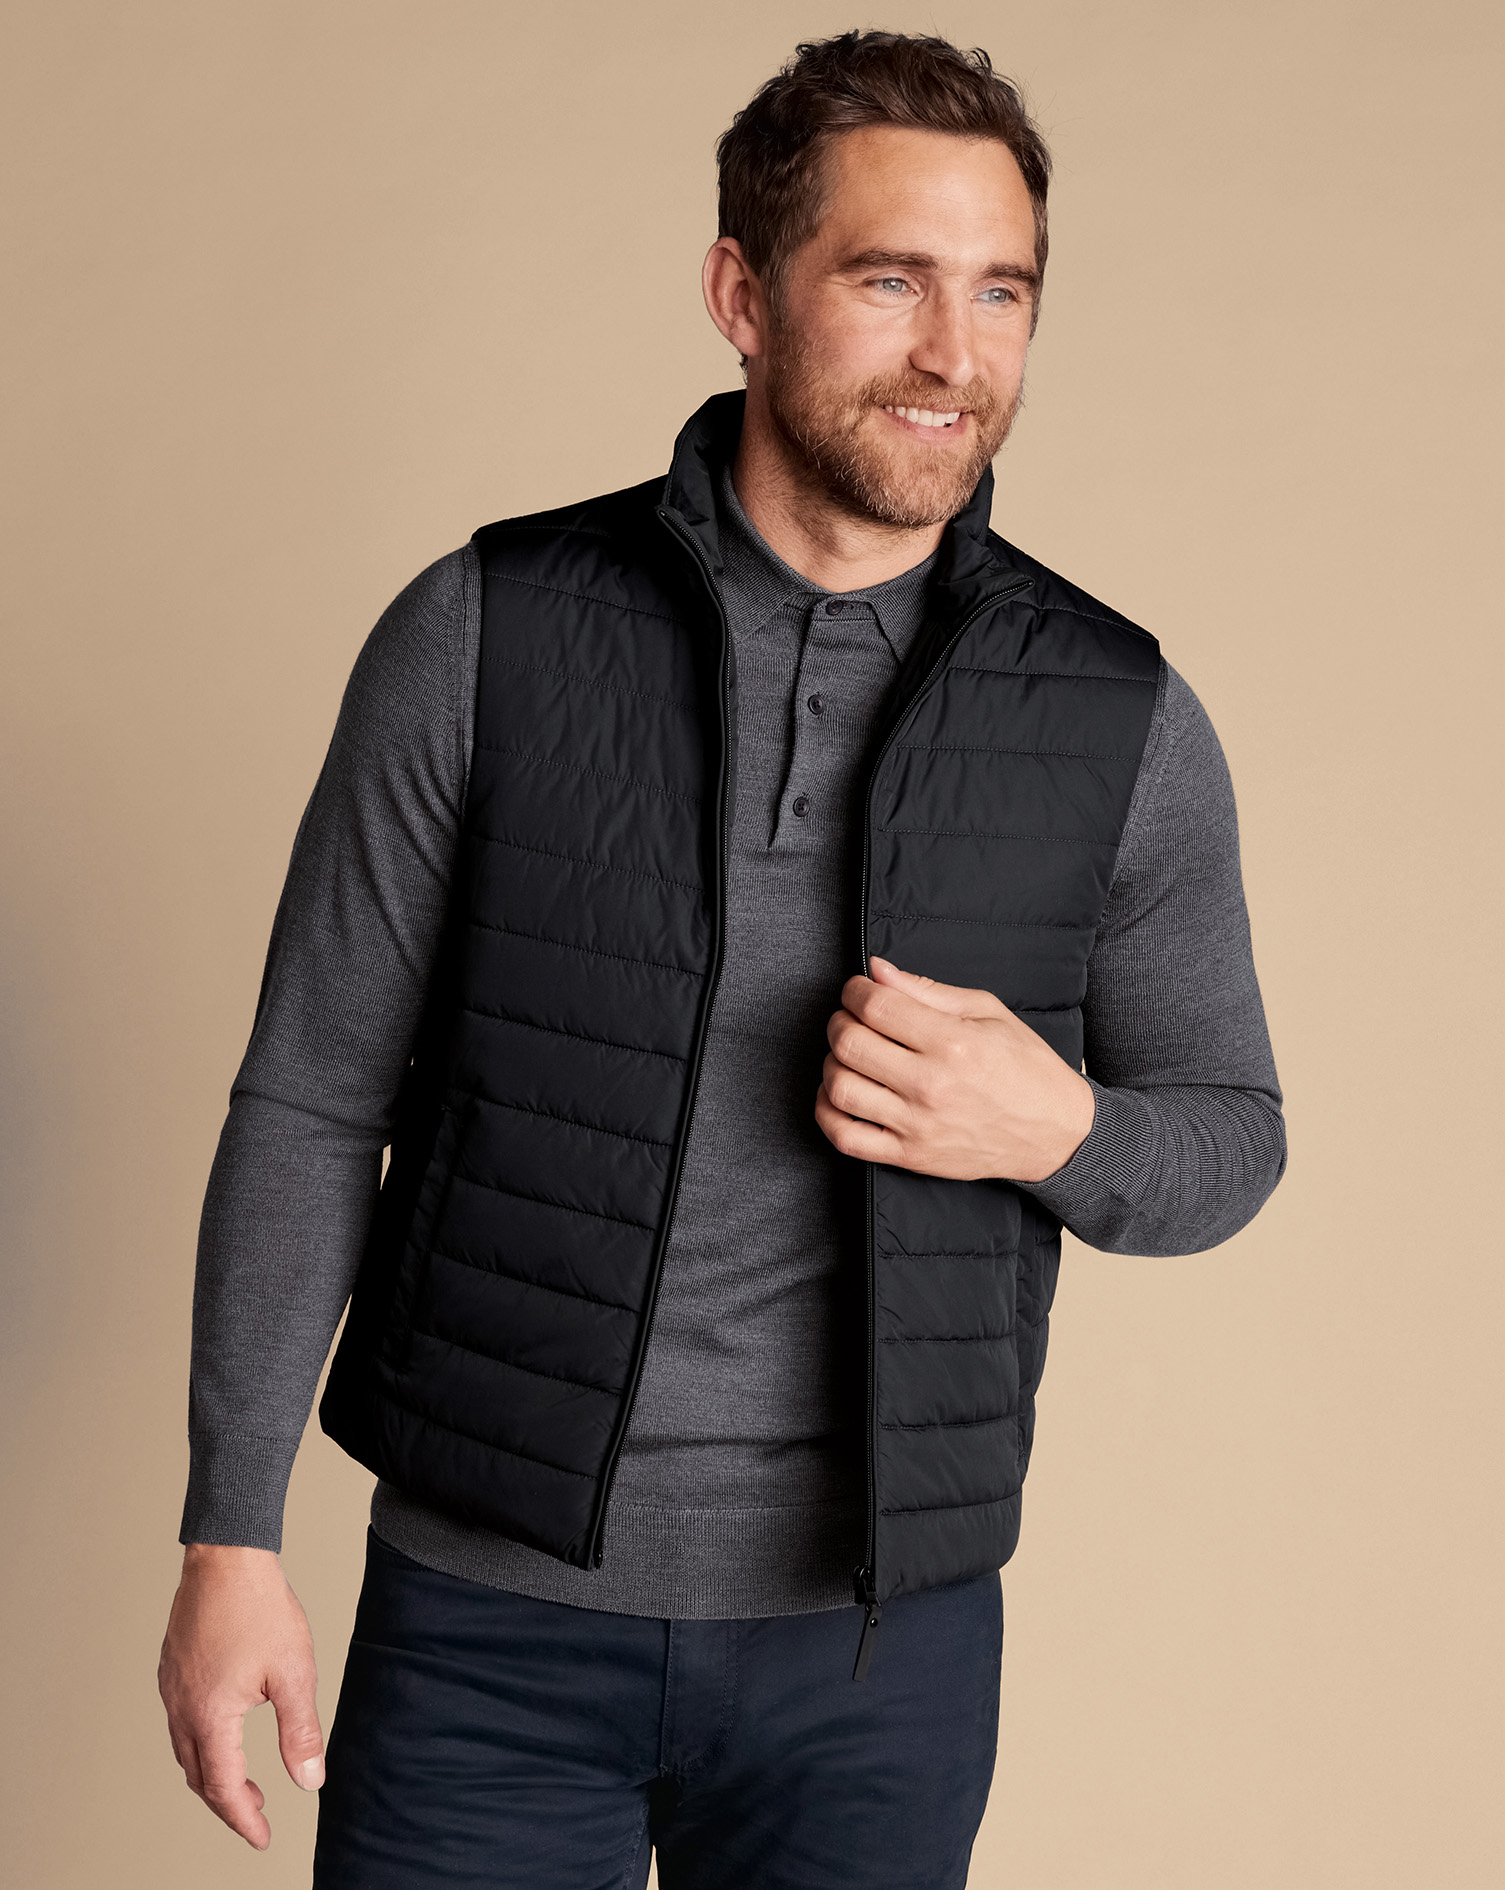 Men's Charles Tyrwhitt Lightweight Gilet - Black na Jacket Size Small Polyester
